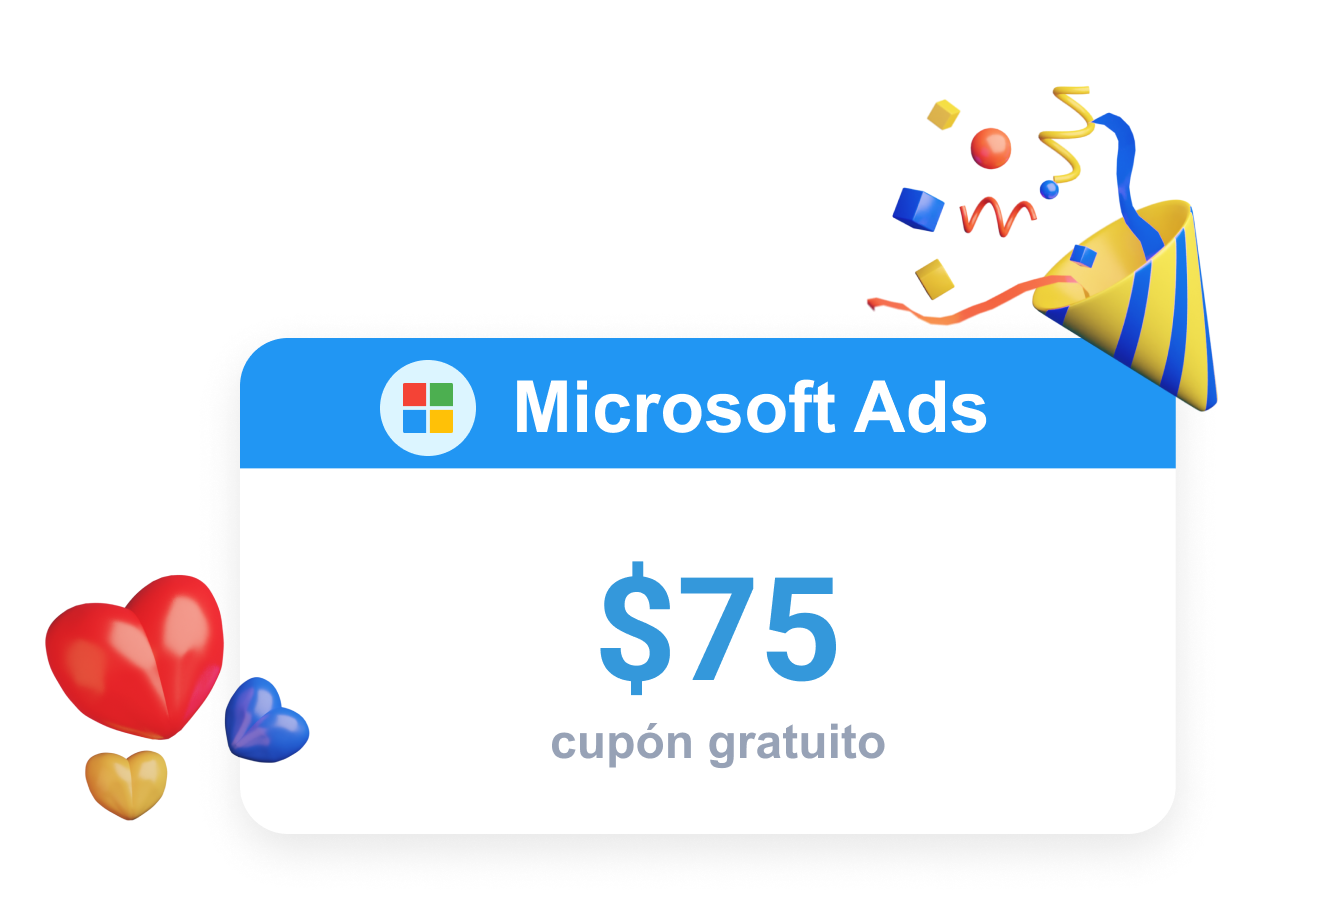 Clever Ads ofrece una promoción para Microsoft Ads en forma de cupón gratuito.